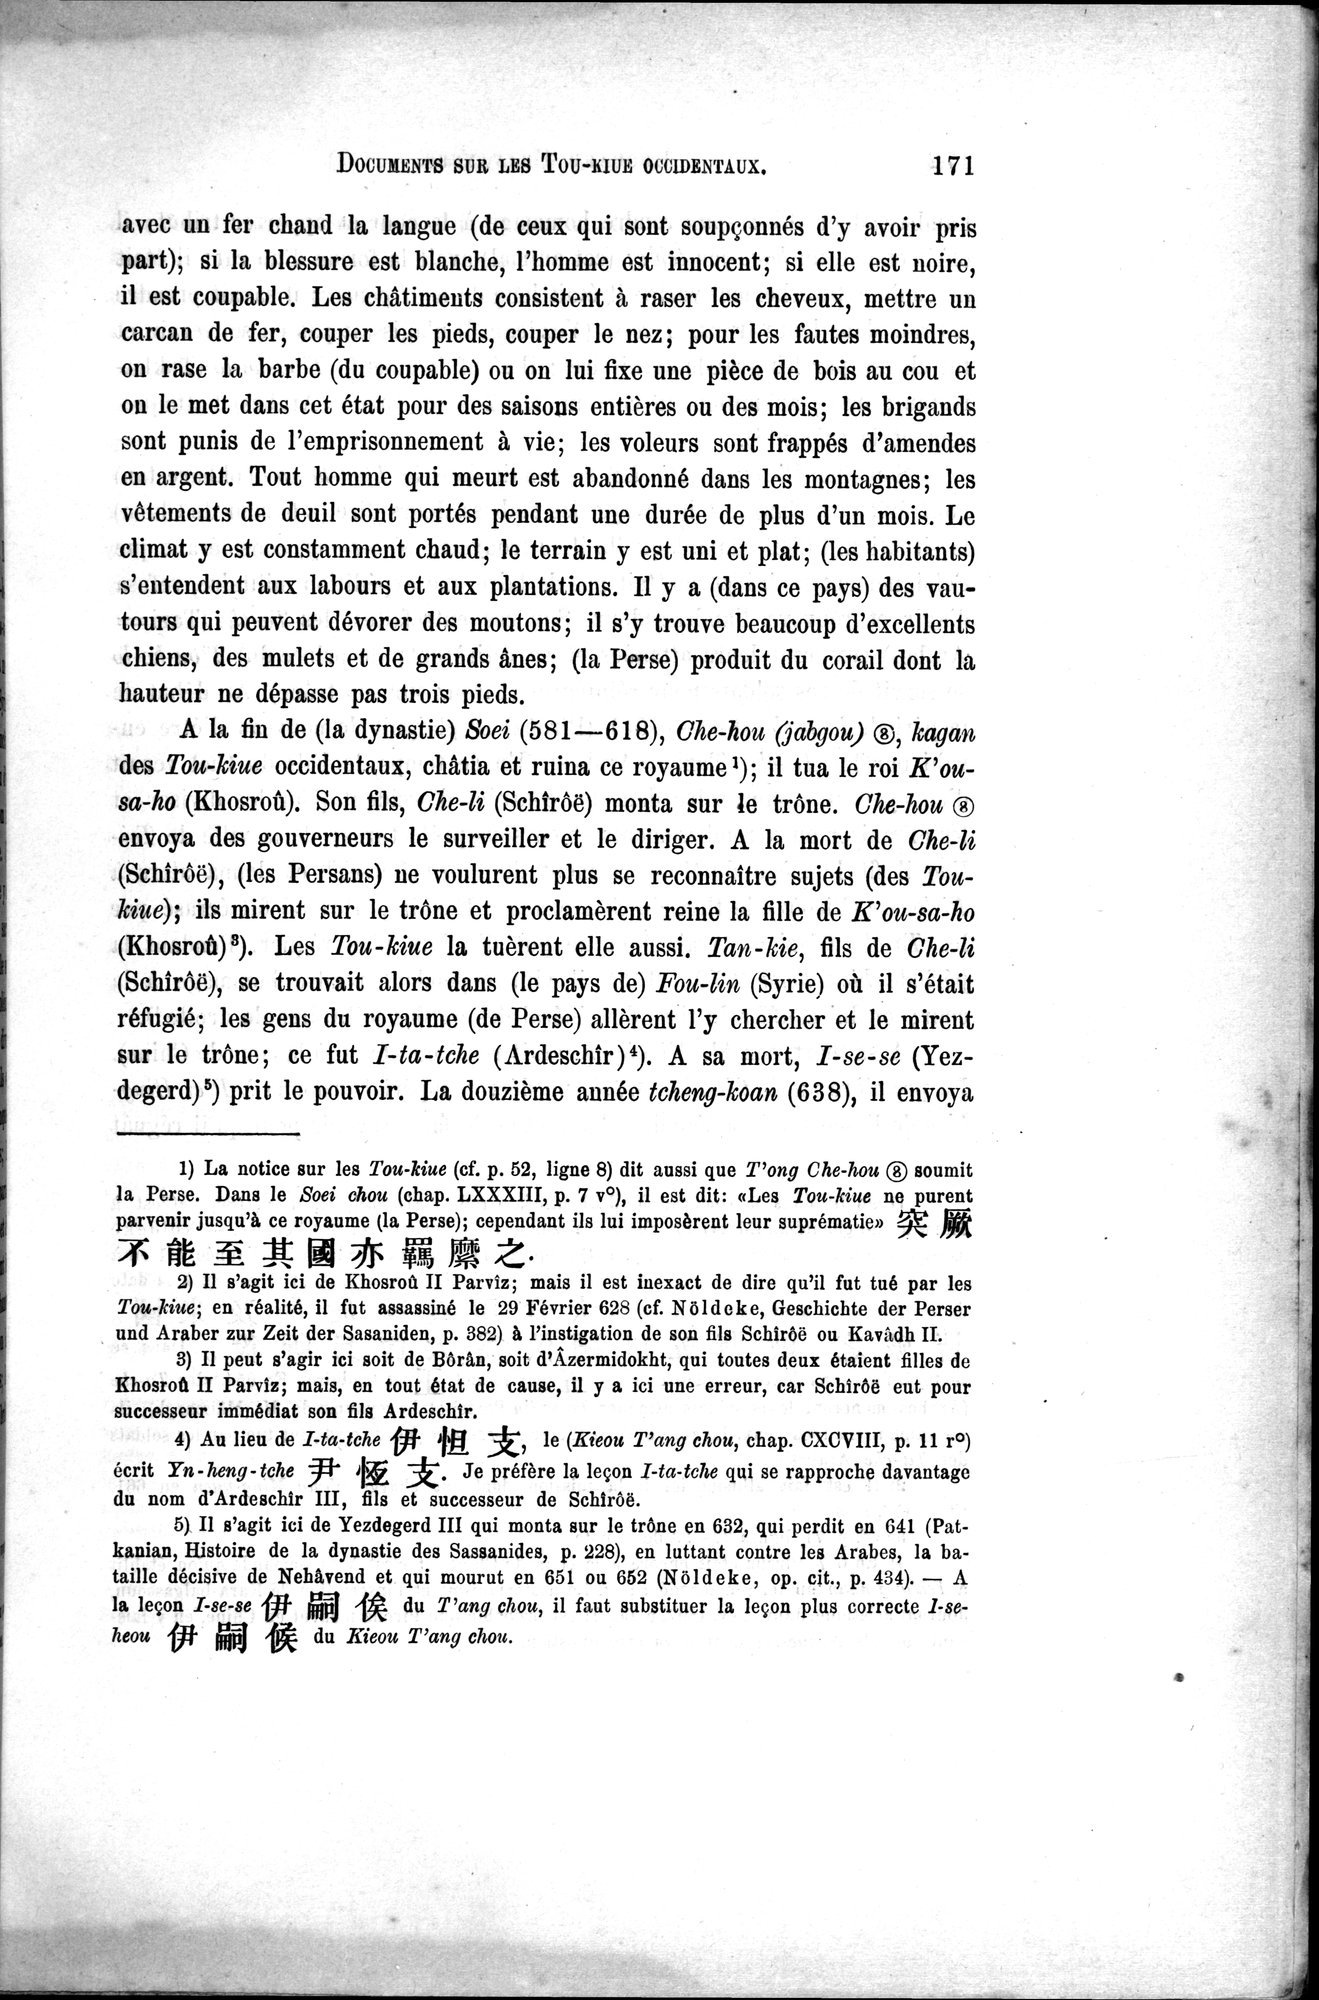 Documents sur les Tou-kiue (Turcs) occidentaux : vol.1 / Page 181 (Grayscale High Resolution Image)